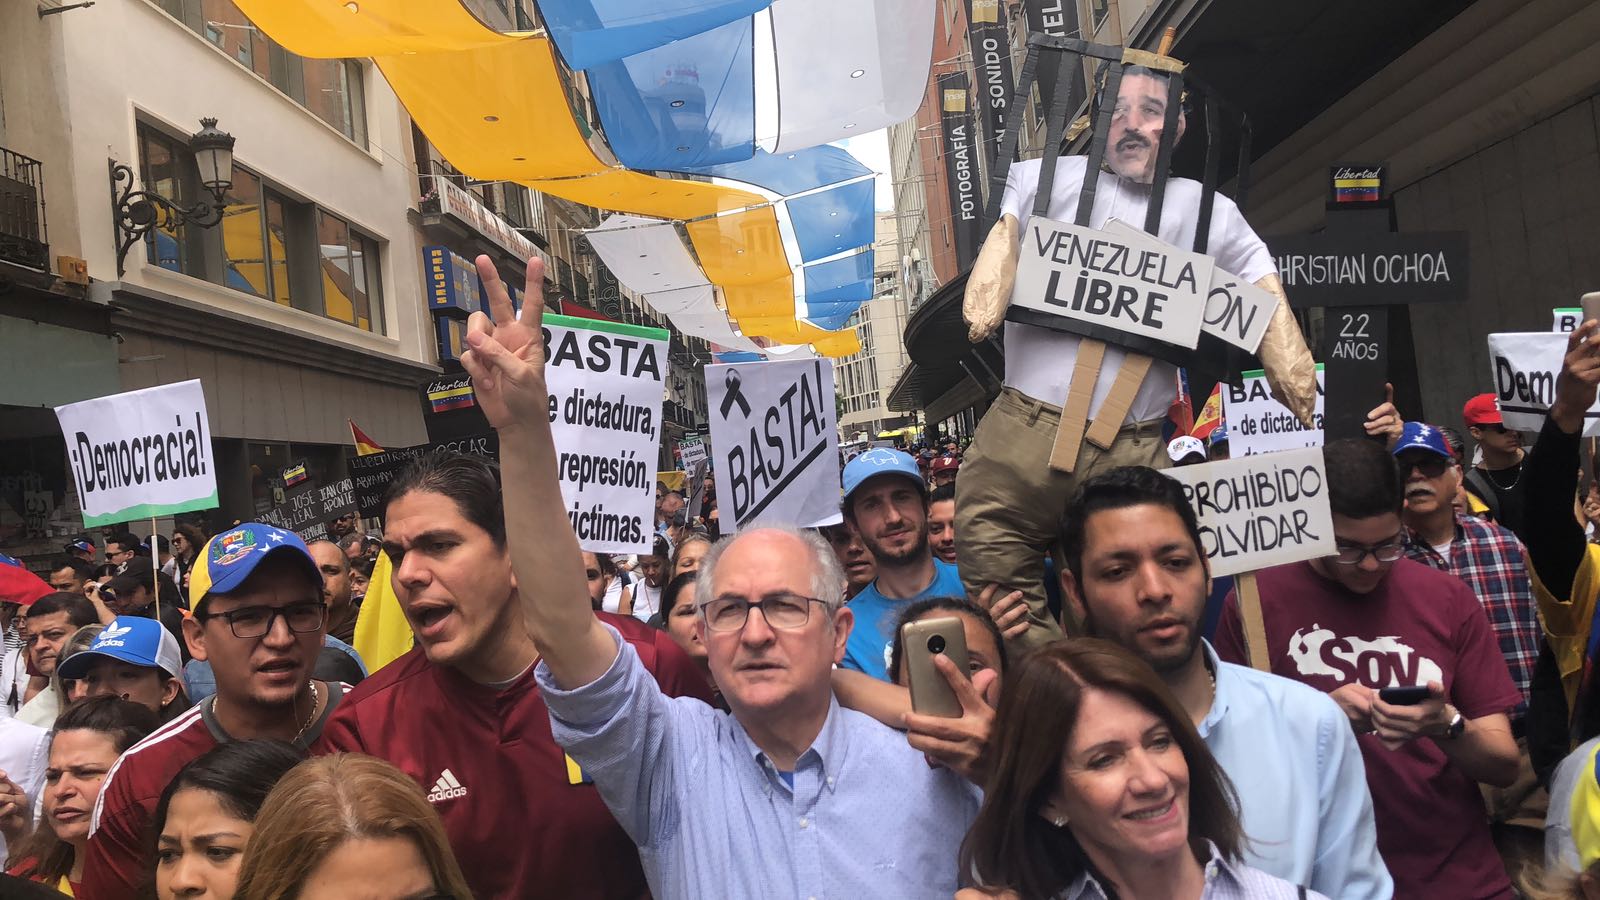 Seguiremos luchando por la libertad de Venezuela, dijo Ledezma durante marcha en Madrid